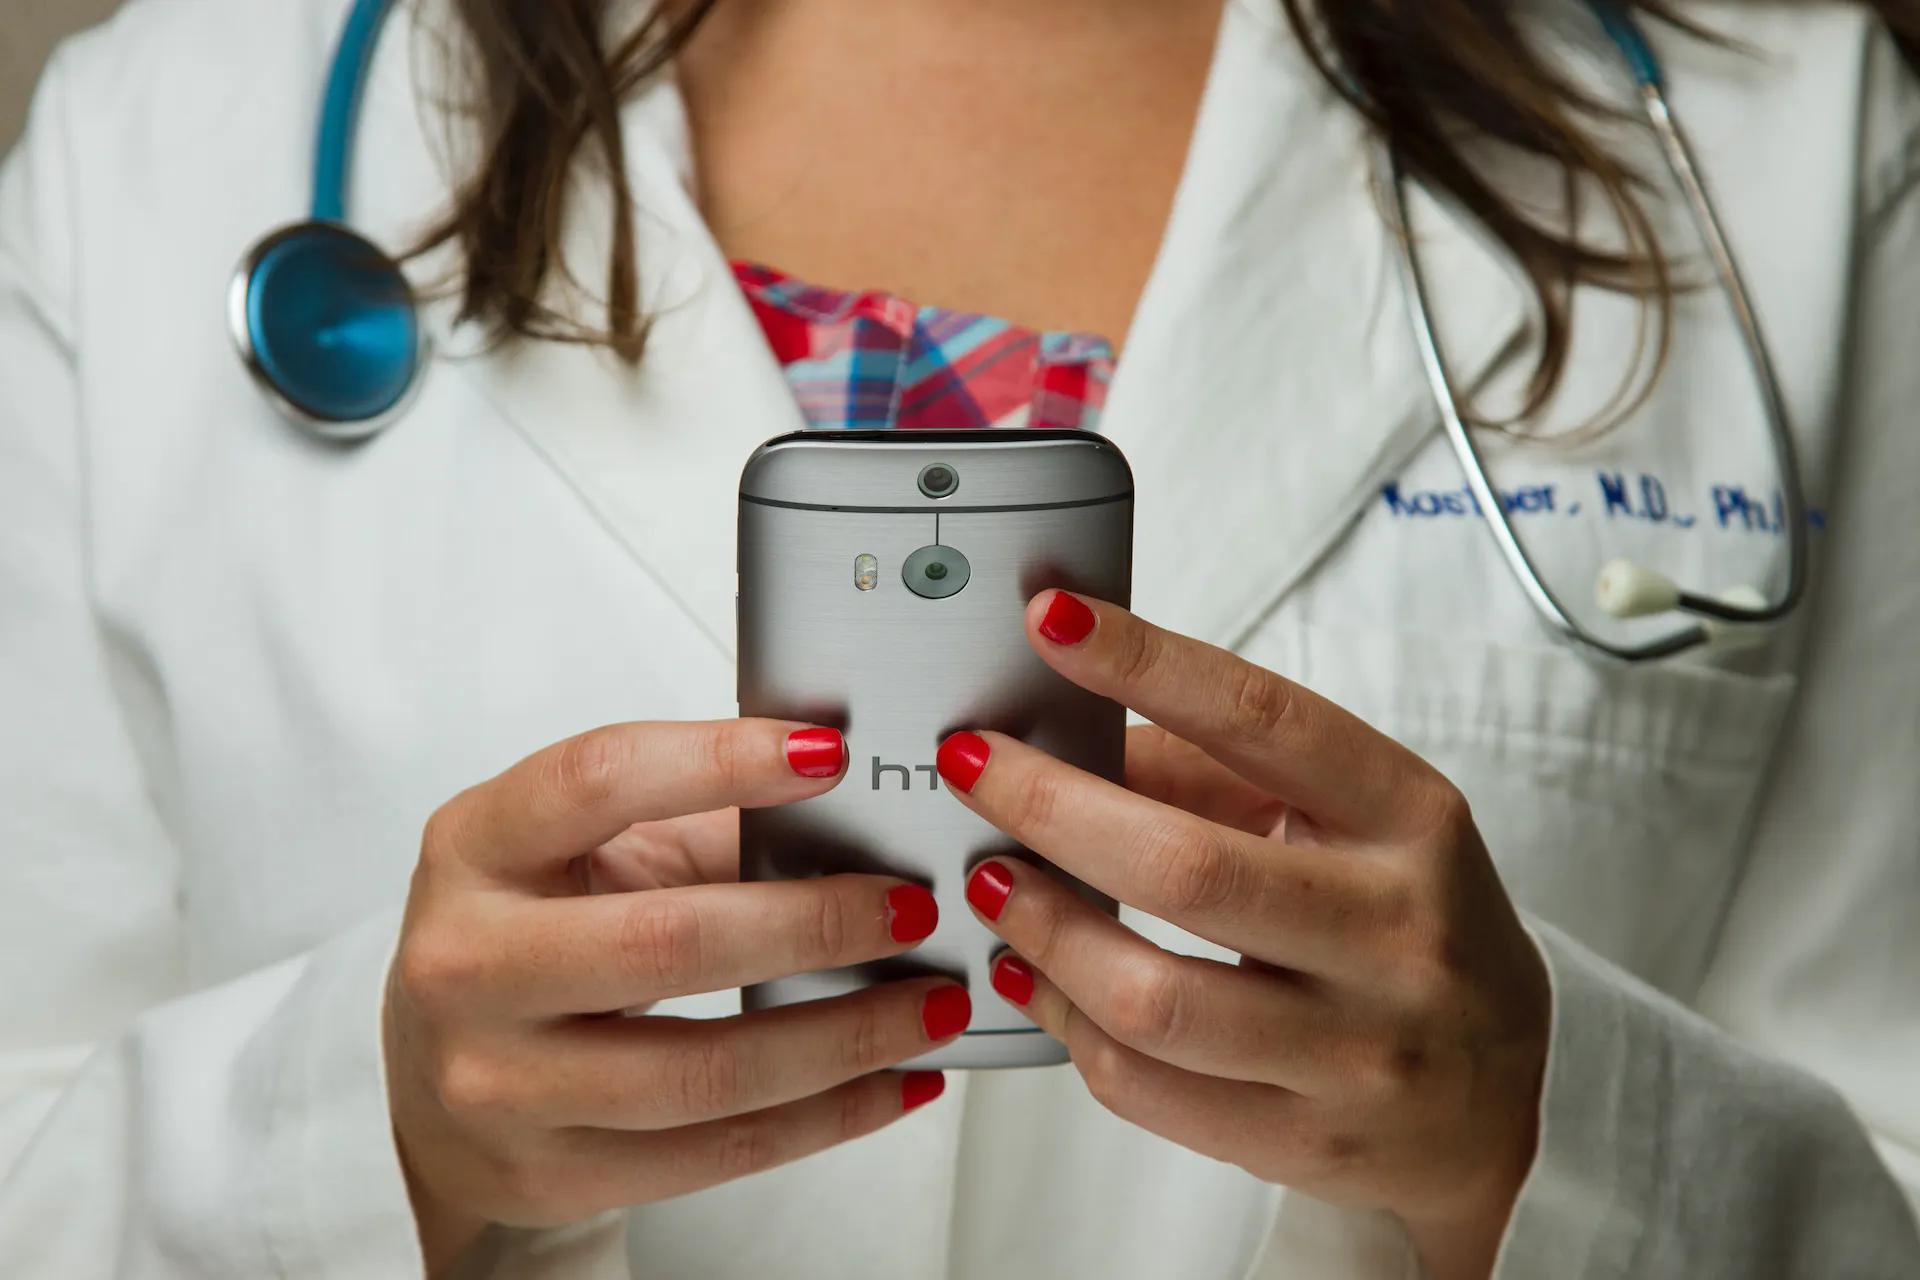 A nurse holding a smartphone